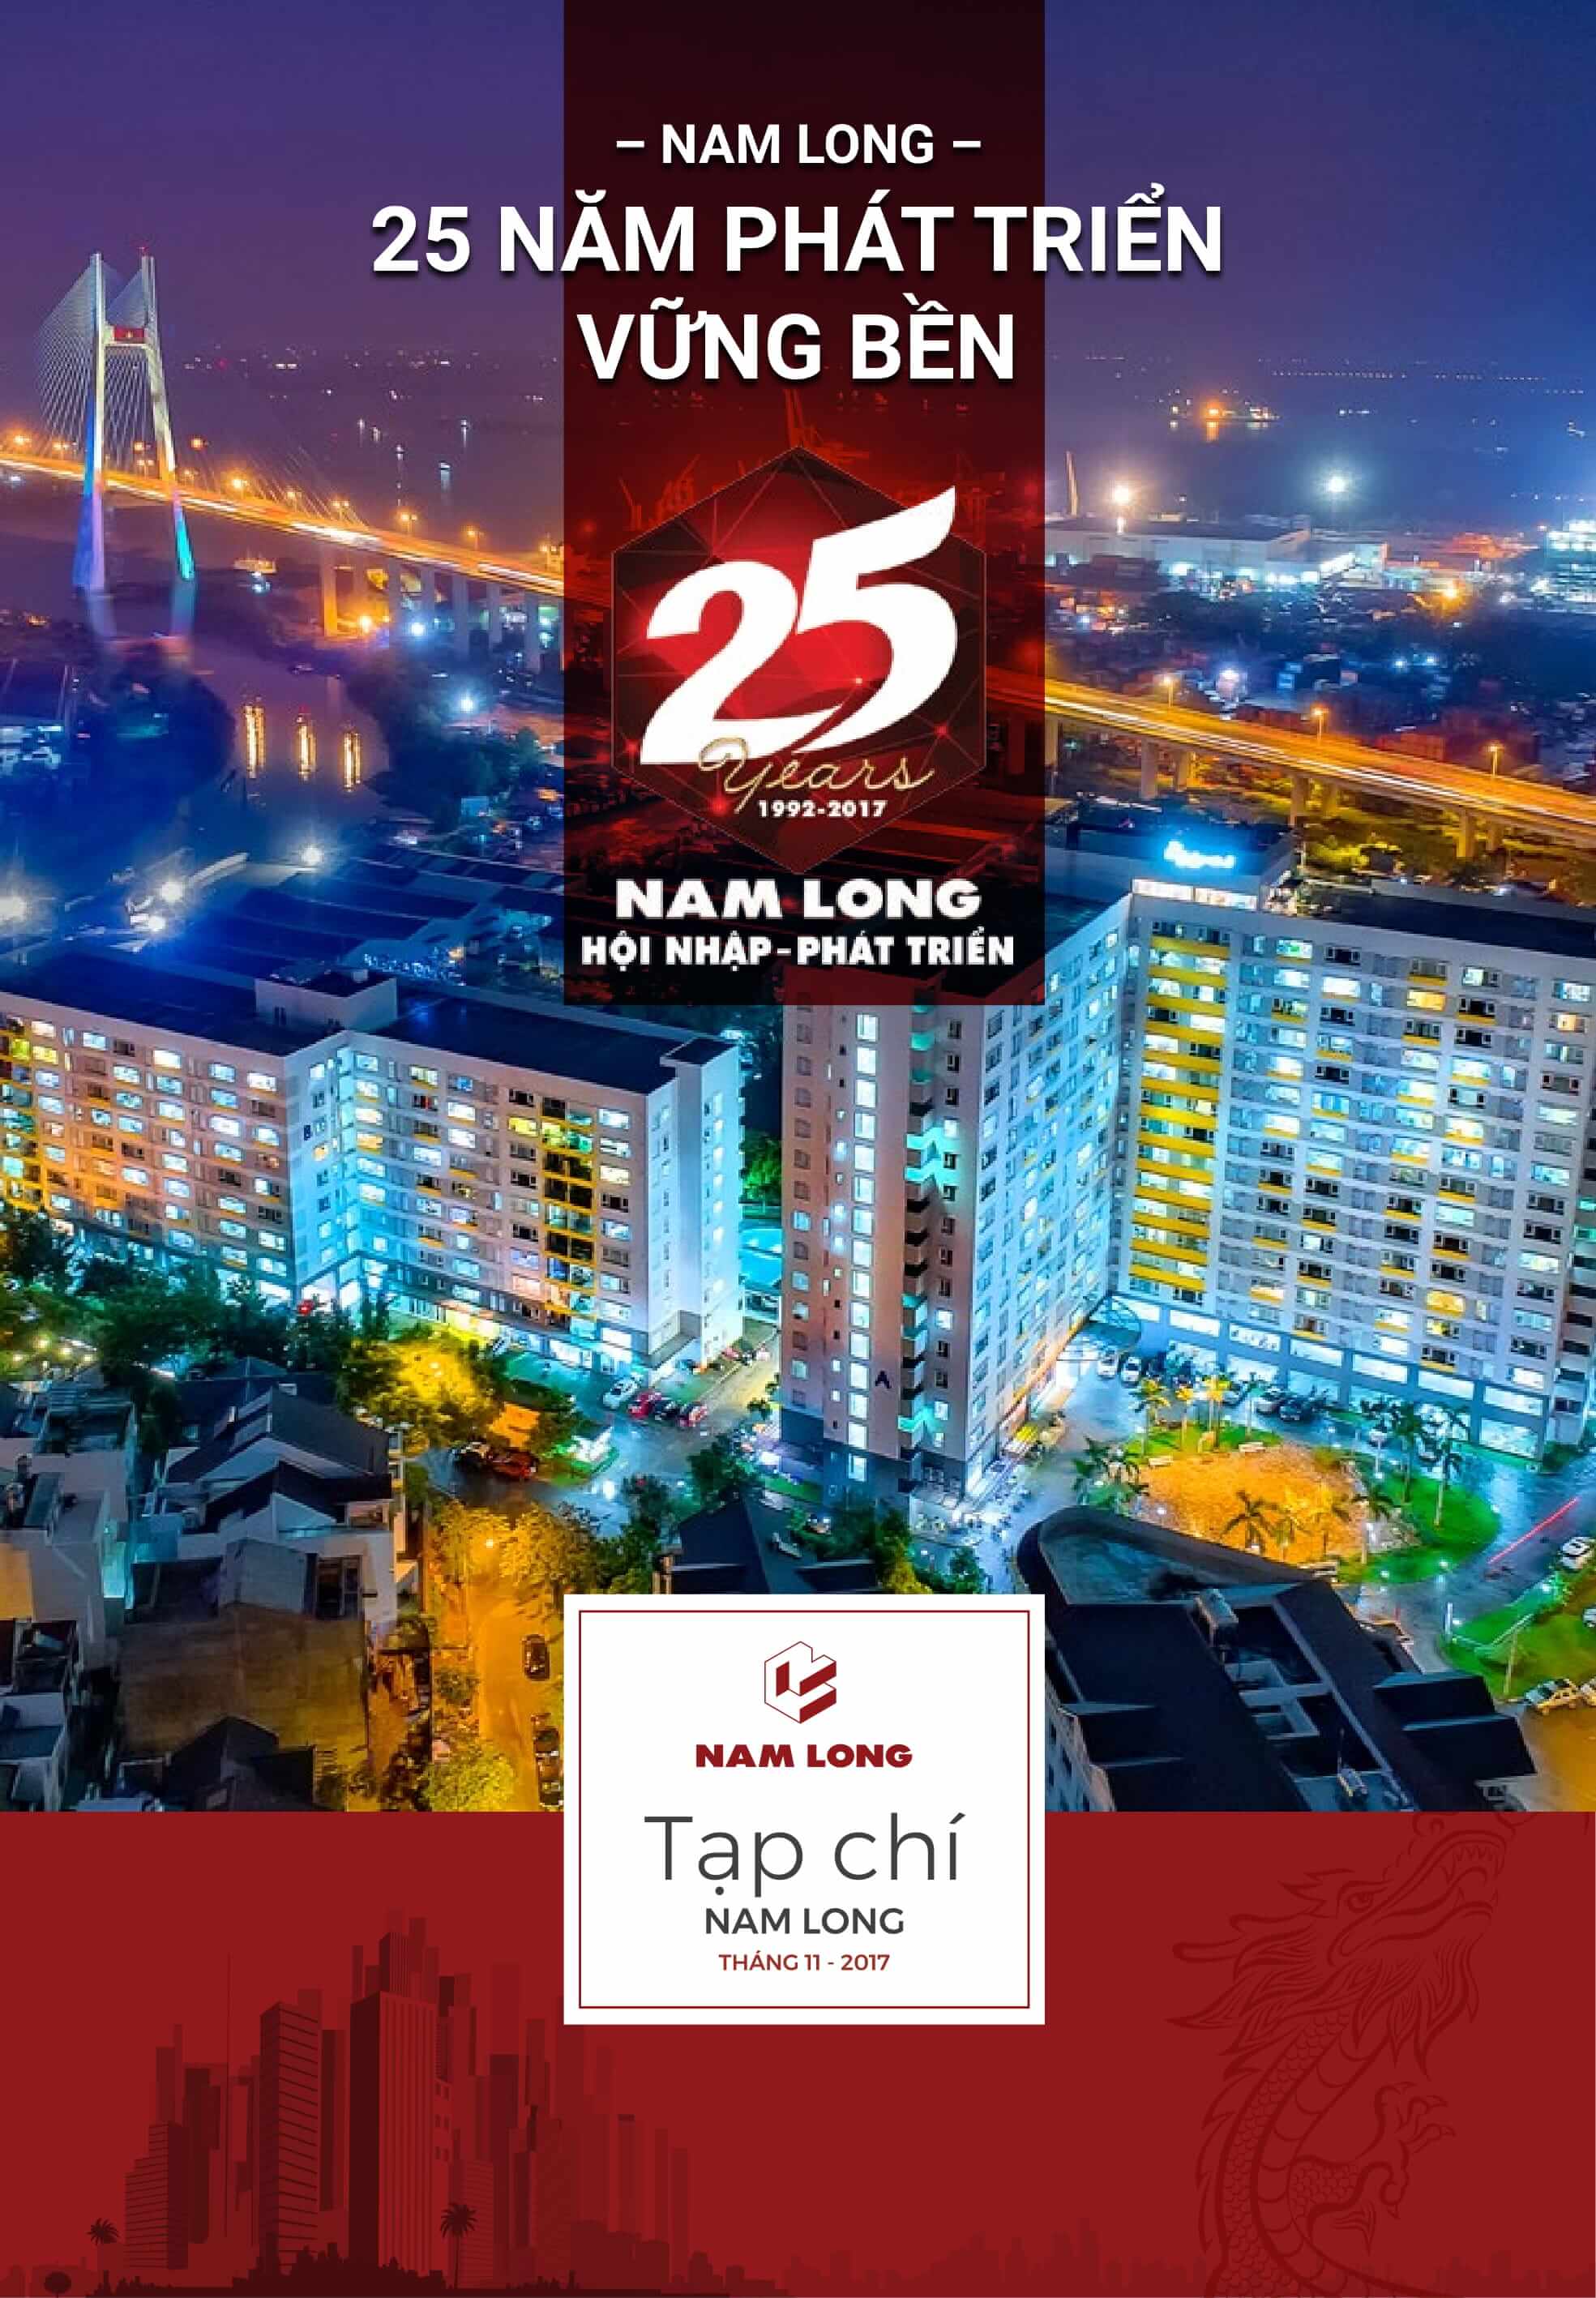 Tap chi Nam Long